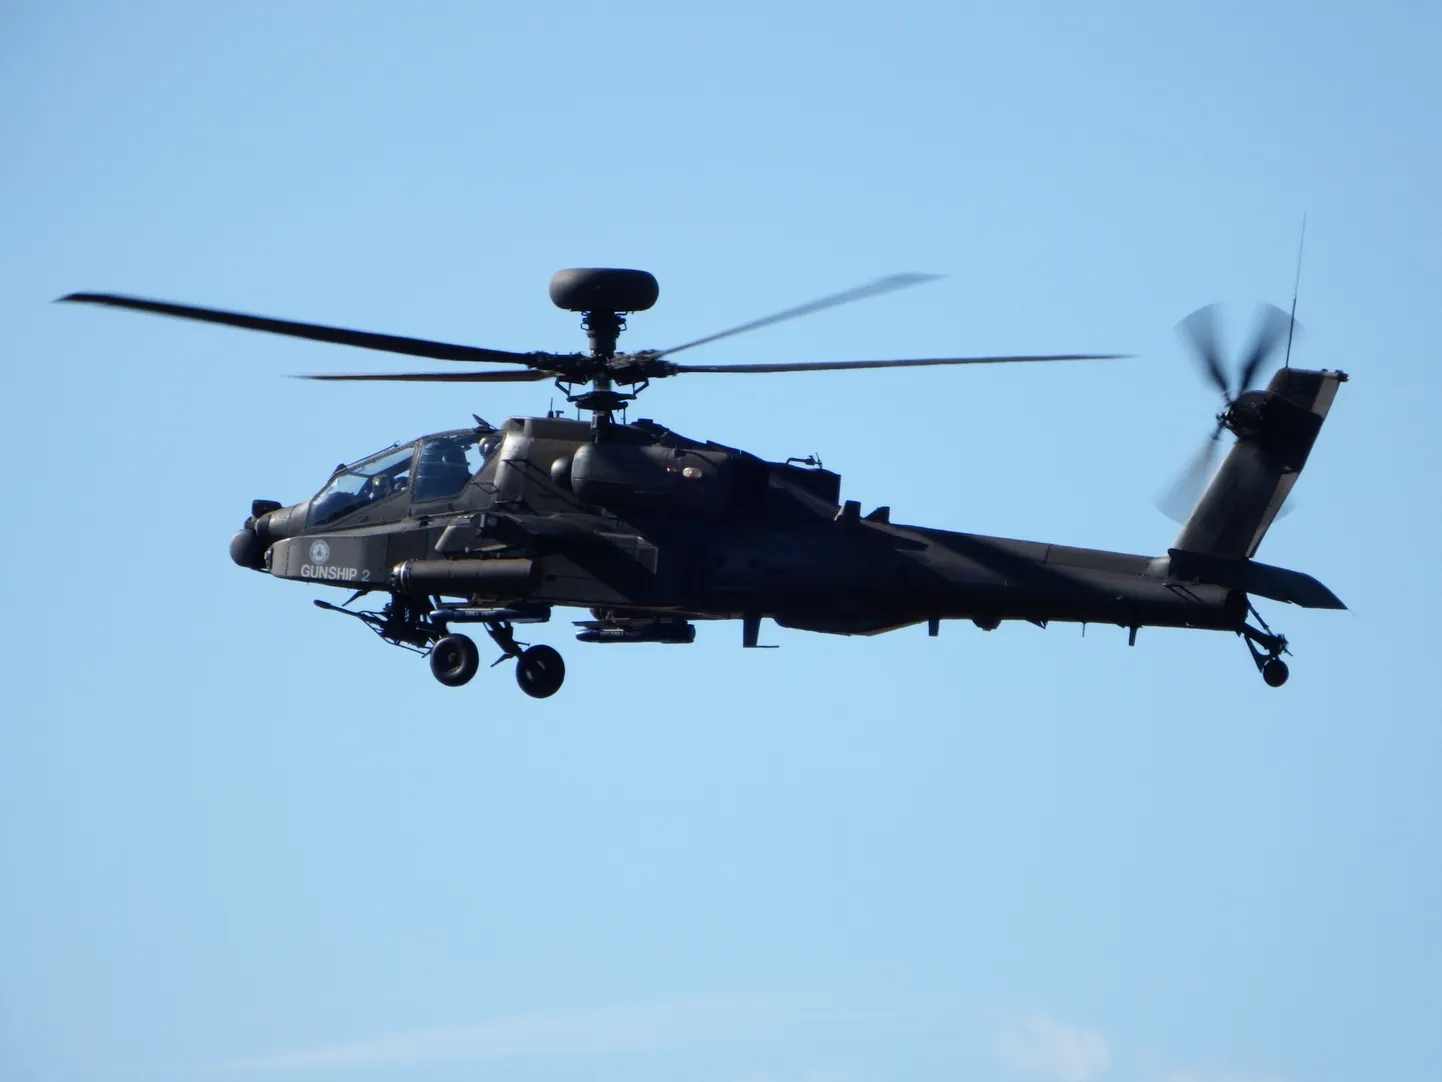 Militārais helikopters. Ilustratīvs foto